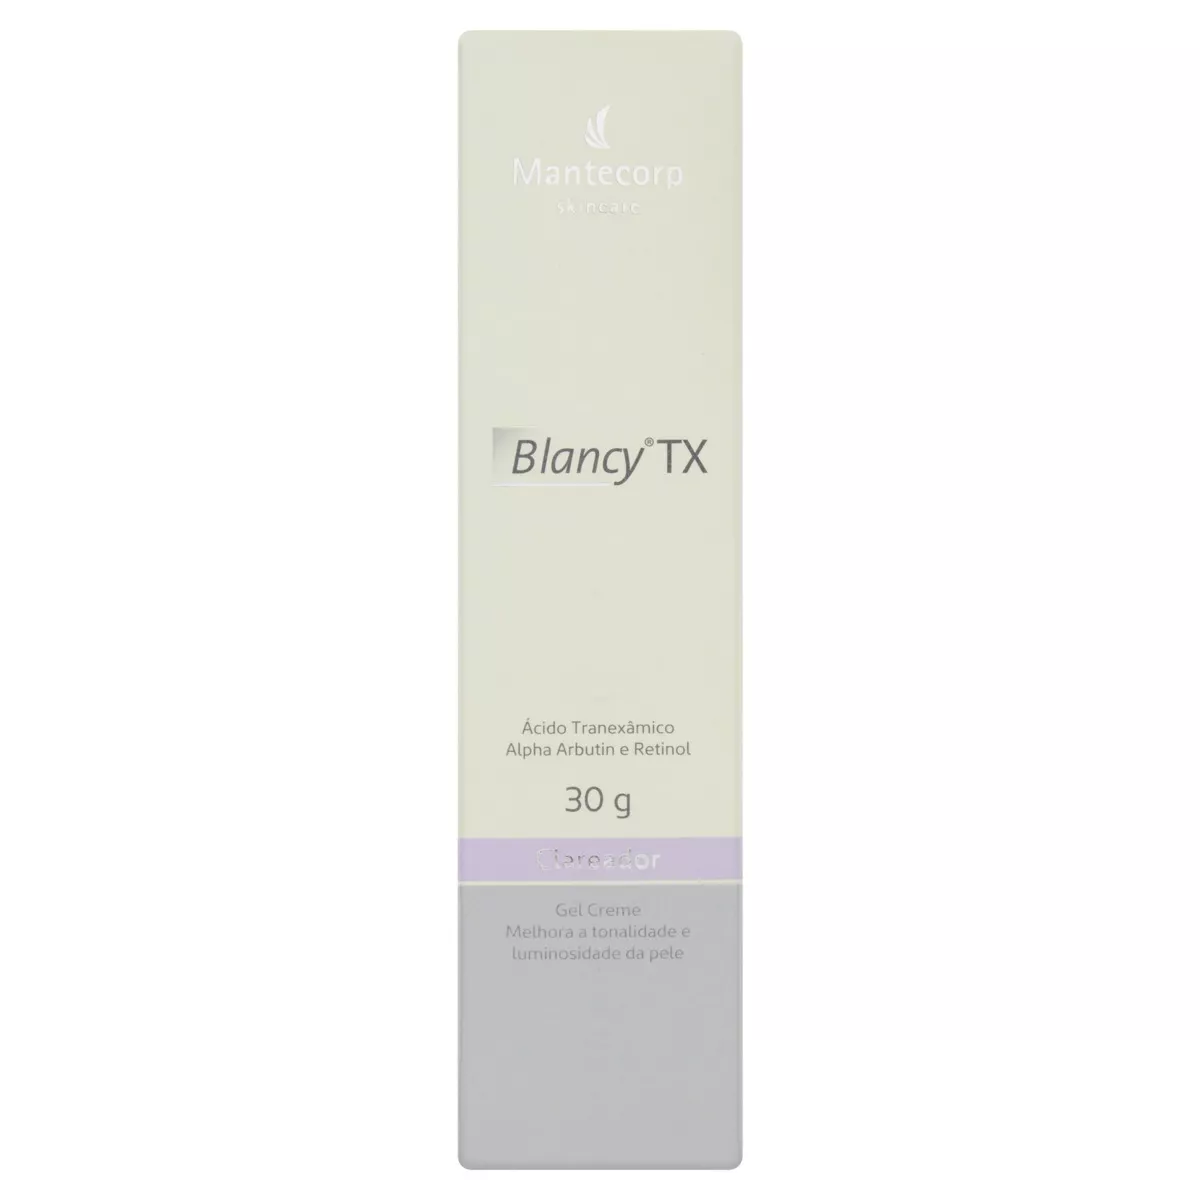 Gel-creme Clareador Mantecorp Skincare Blancy Tx Caixa 30g